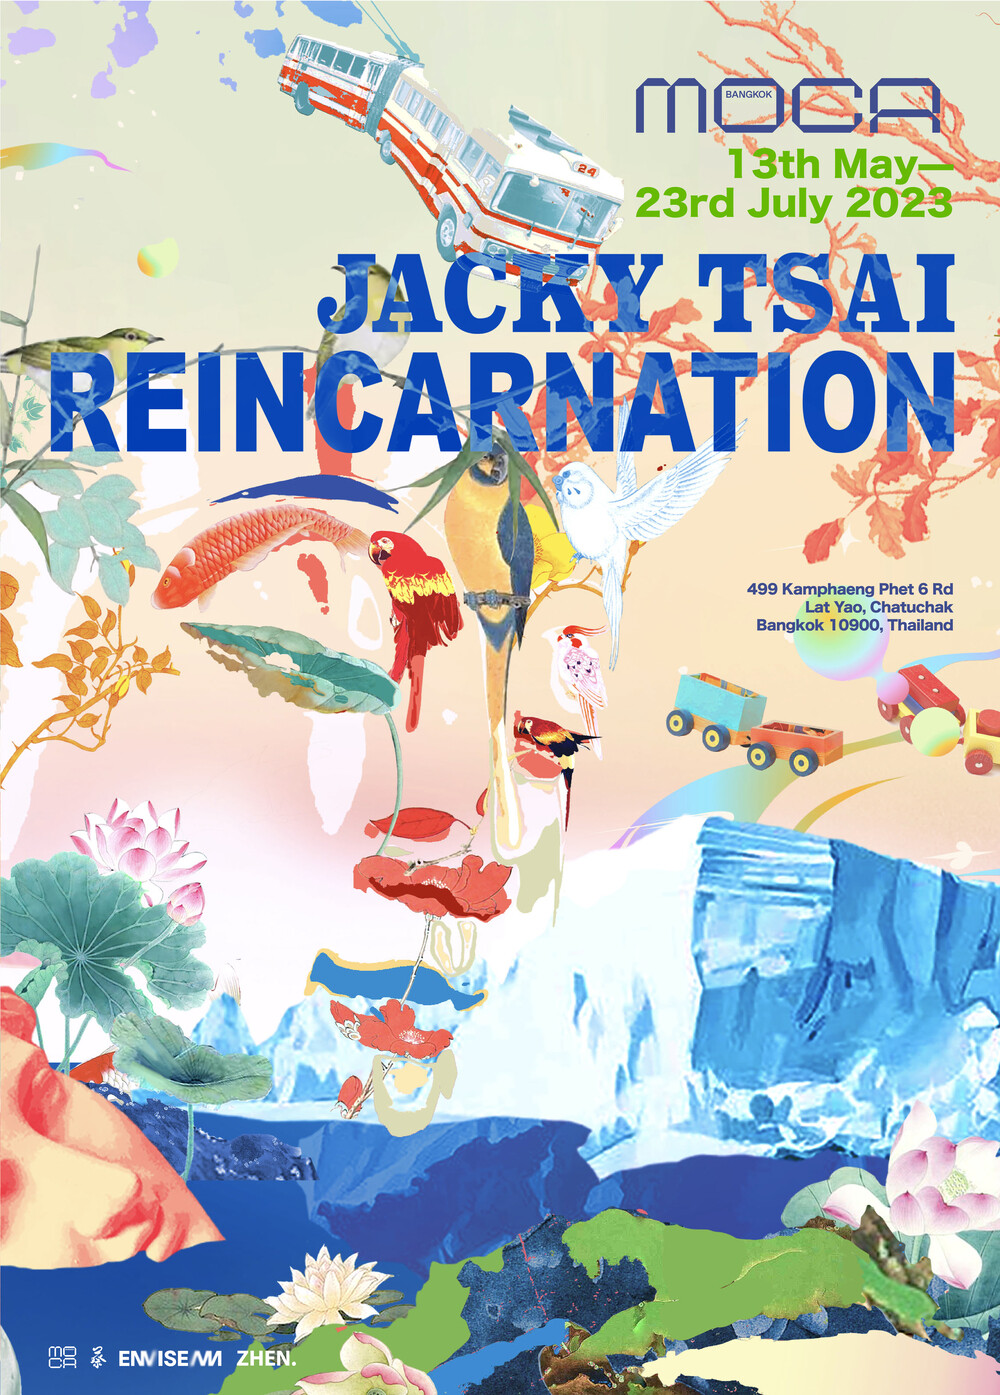 นิทรรศการ "Reincarnation" โดย Jacky Tsai ศิลปินชาวจีนผู้โด่งดัง โชว์เดี่ยวผลงานครั้งแรก ณ พิพิธภัณฑ์ศิลปะไทยร่วมสมัย MOCA BANGKOK เริ่มวันนี้ ถึง 23 กรกฎาคม 2023